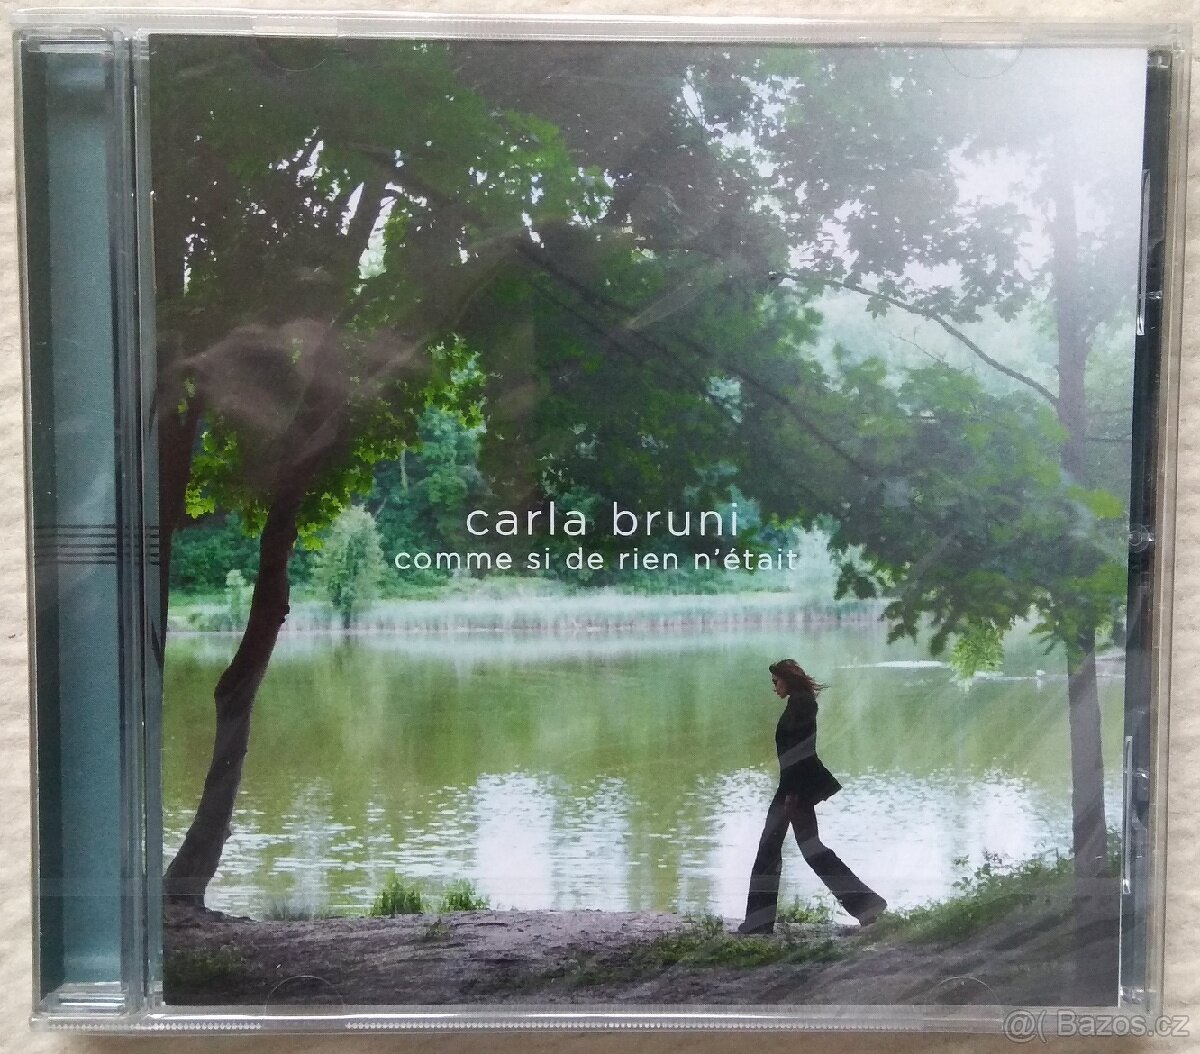 Carla Bruni - Comme Si De Rien Nétait
CD

